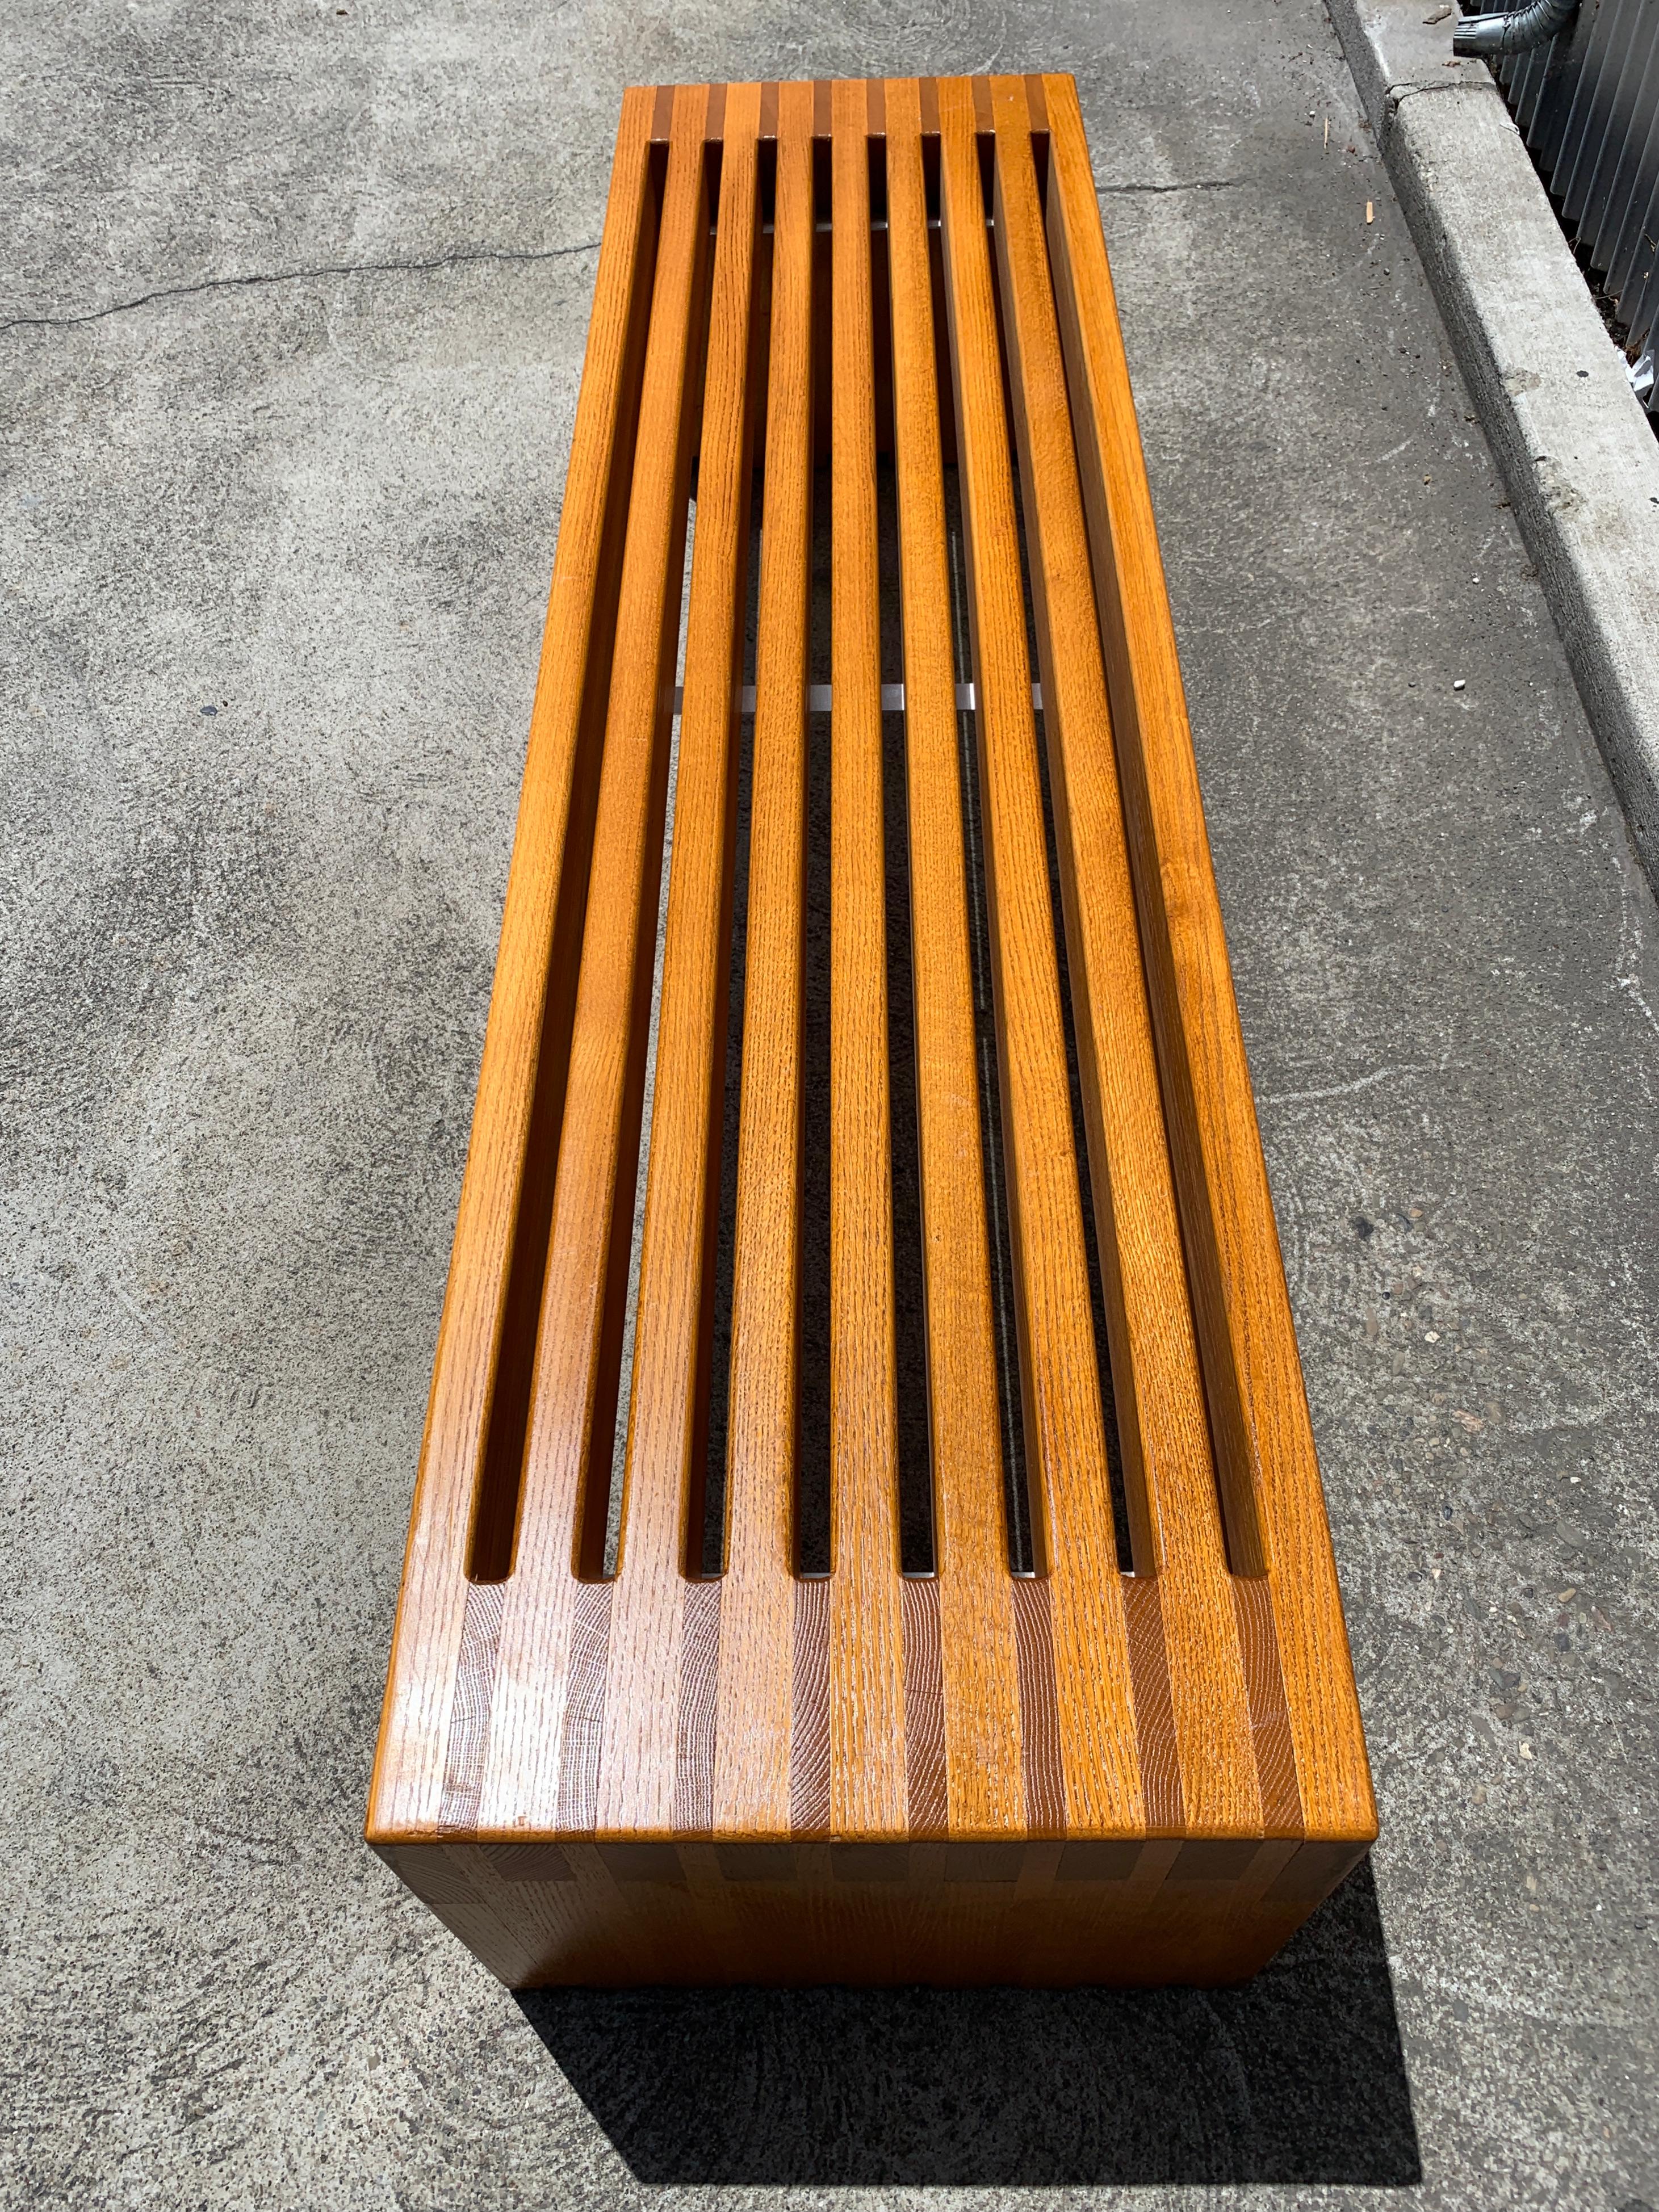 Impressive Solid Oak Bench by Mexican Modernist Architect Ricardo Legorretta In Good Condition In Danville, CA